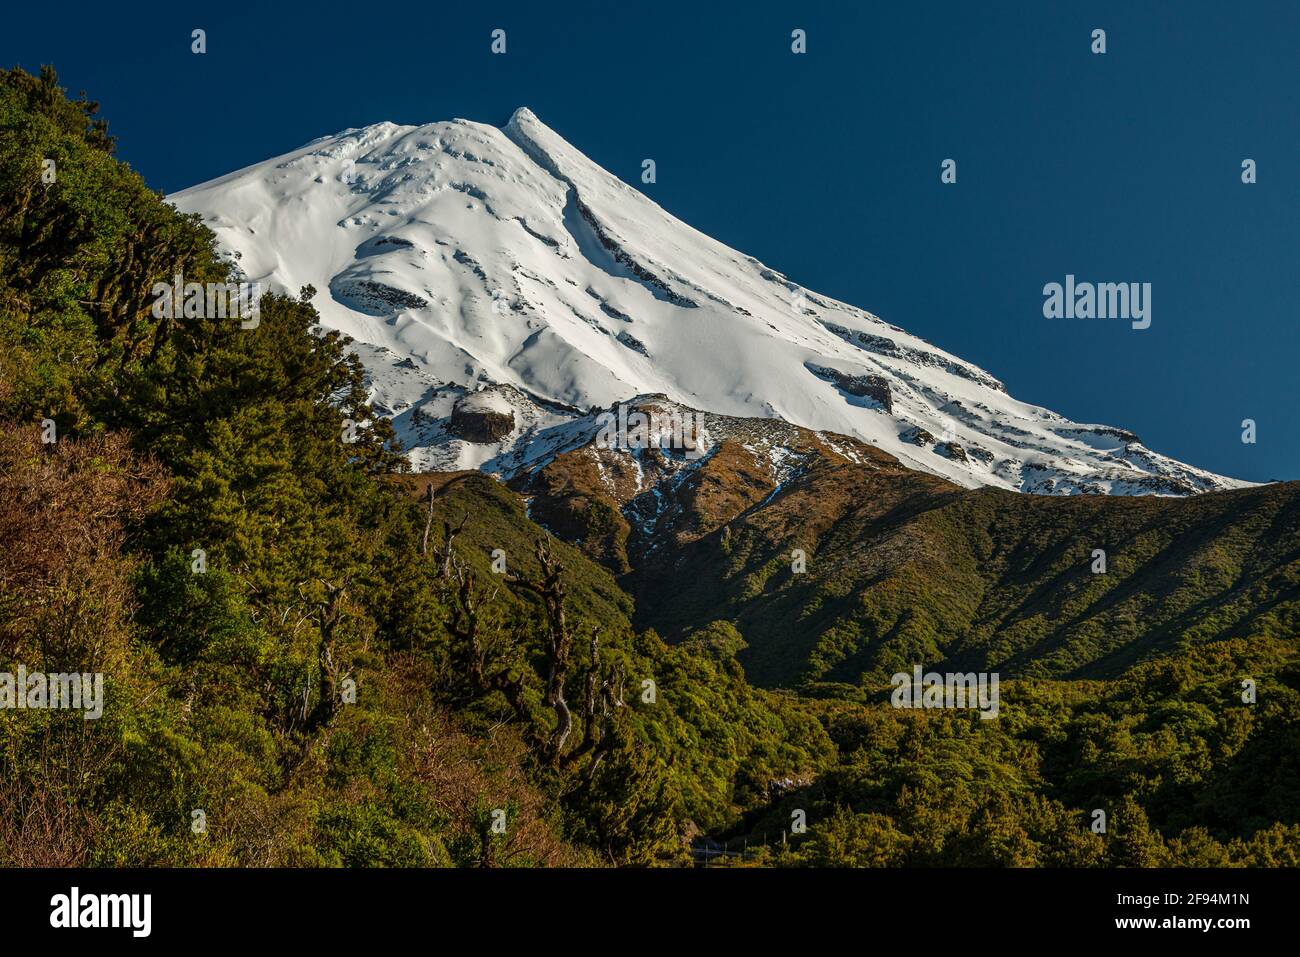 La neige couvrait le mont Taranaki, un volcan semi-dormant de l'île du nord de la Nouvelle-Zélande. Banque D'Images